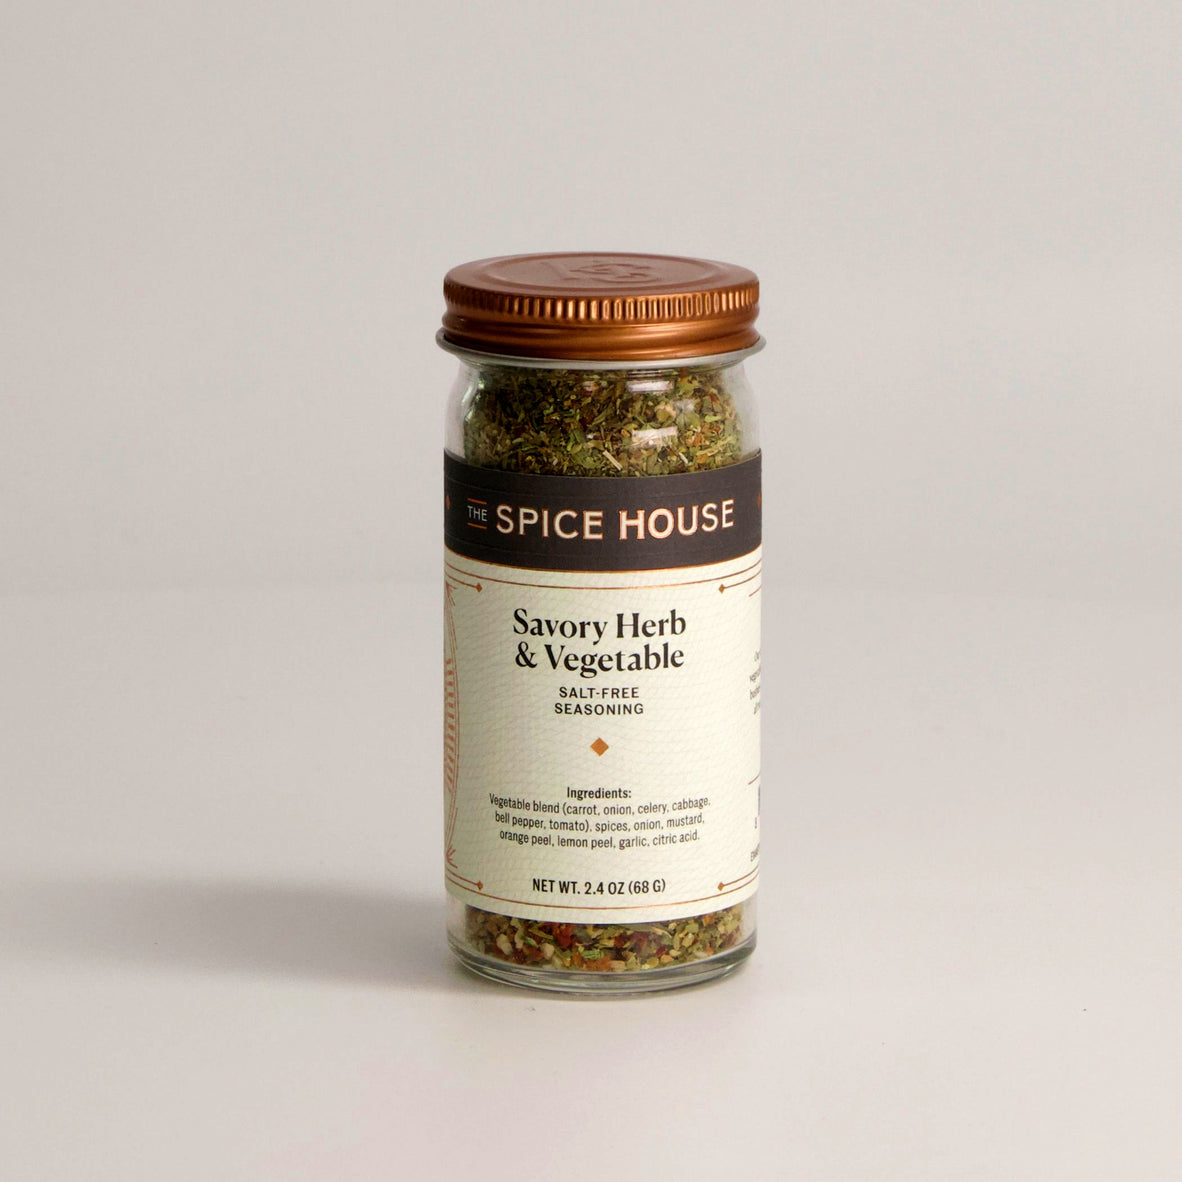 Ultimate Pantry Seasoning, Herb, Spice and Seasoned Salt Set